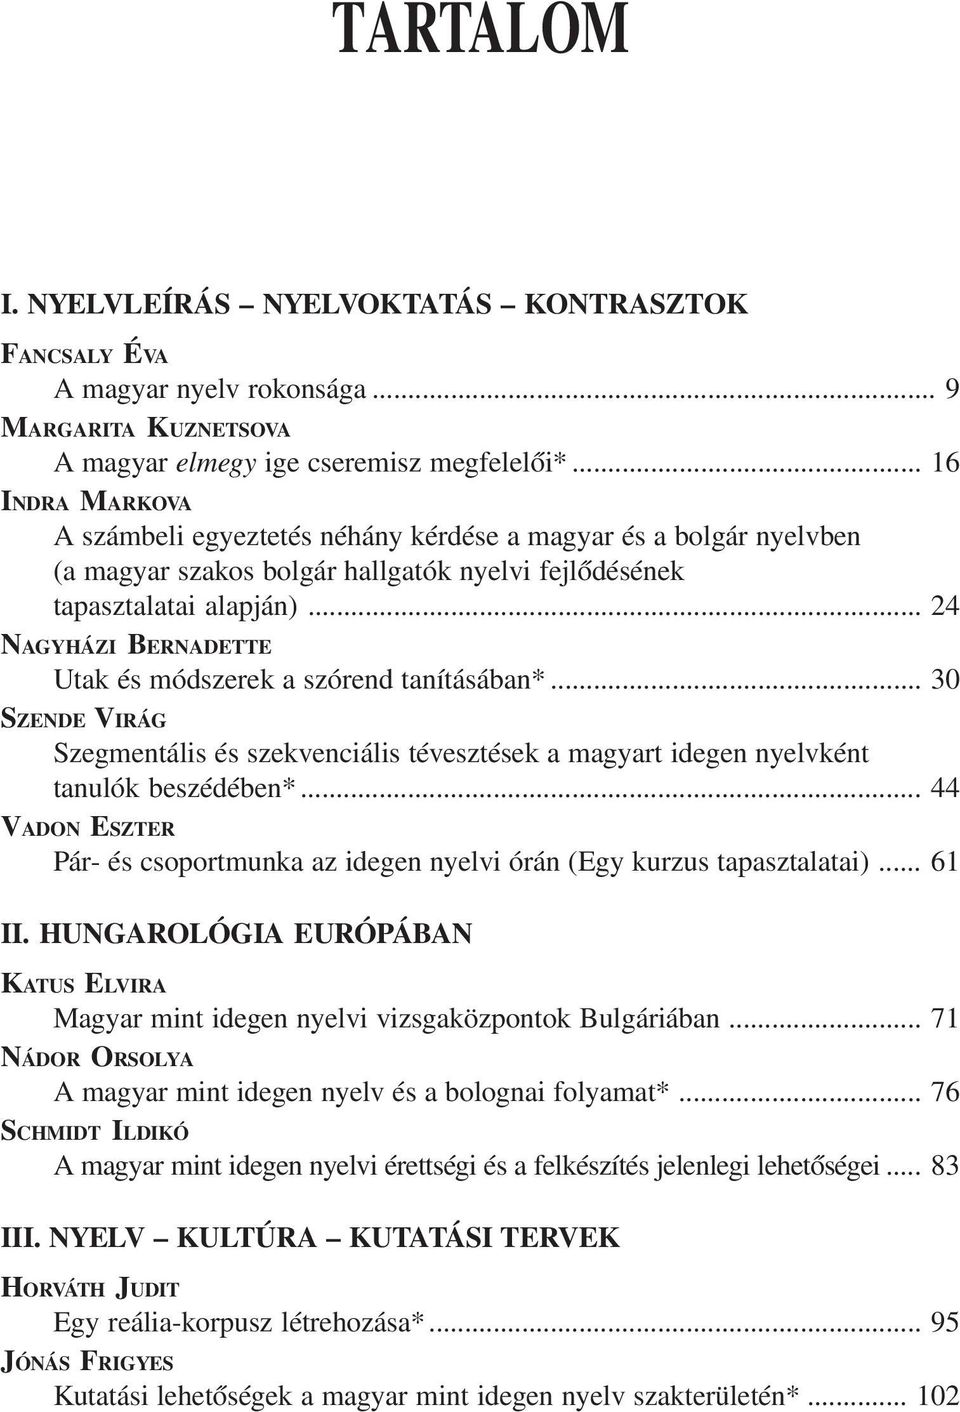 .. 24 NAGYHÁZI BERNADETTE Utak és módszerek a szórend tanításában*... 30 SZENDE VIRÁG Szegmentális és szekvenciális tévesztések a magyart idegen nyelvként tanulók beszédében*.